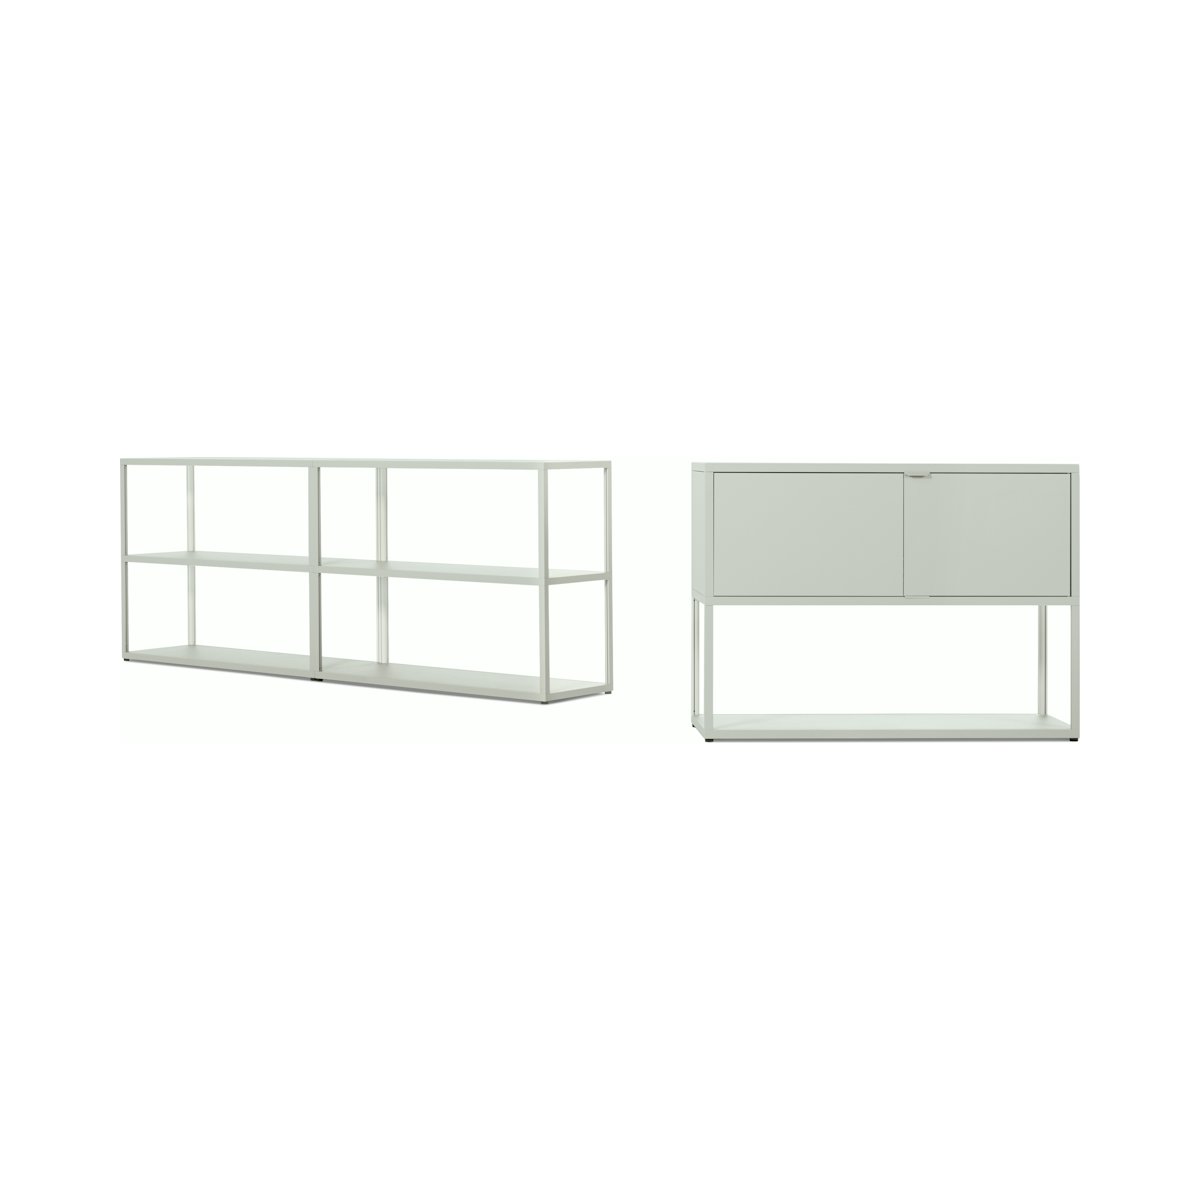 New Order - Double Low Bookshelf + Low Bookshelf with Storage